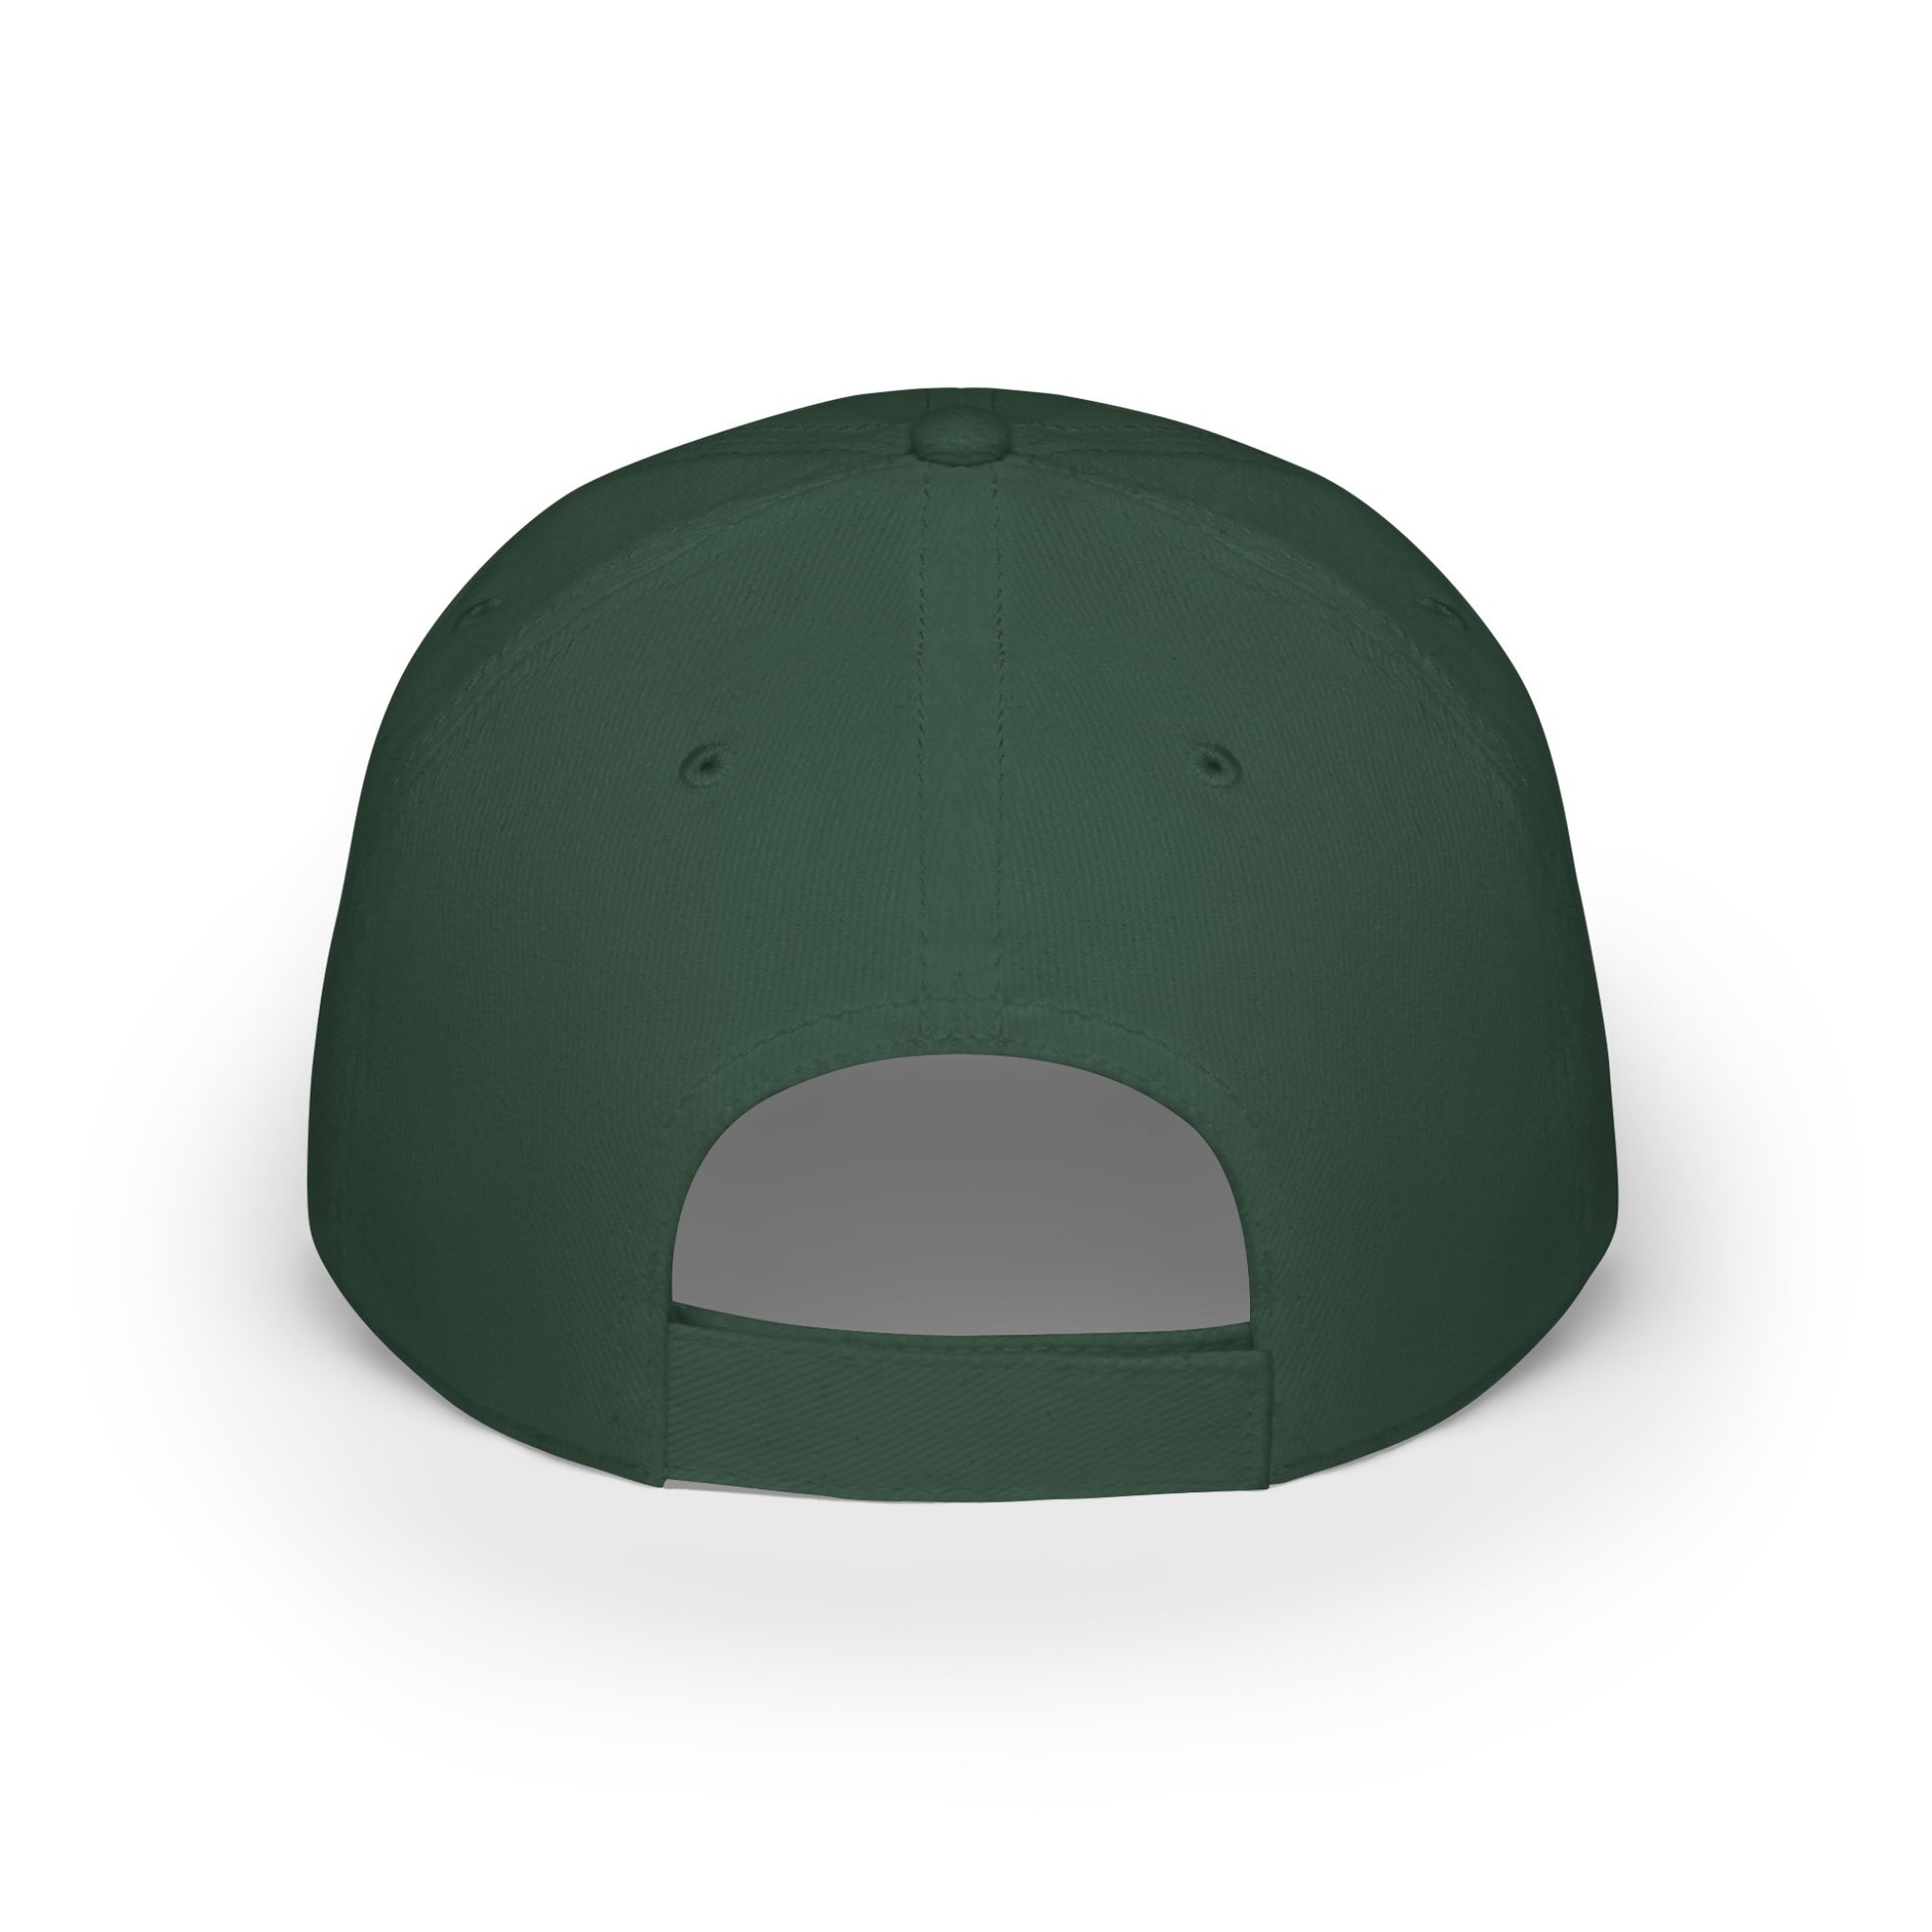 MDBTDJ#AJBLUC - Low Profile Baseball Cap Tattooed Dj's Limited Edition, Hats, Tattooed Djs Shop